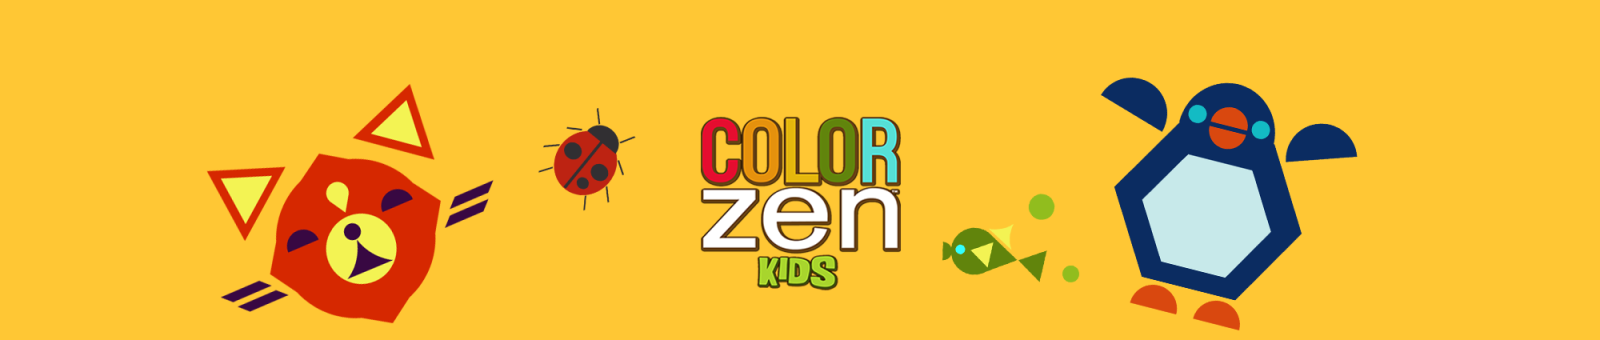 color zen download